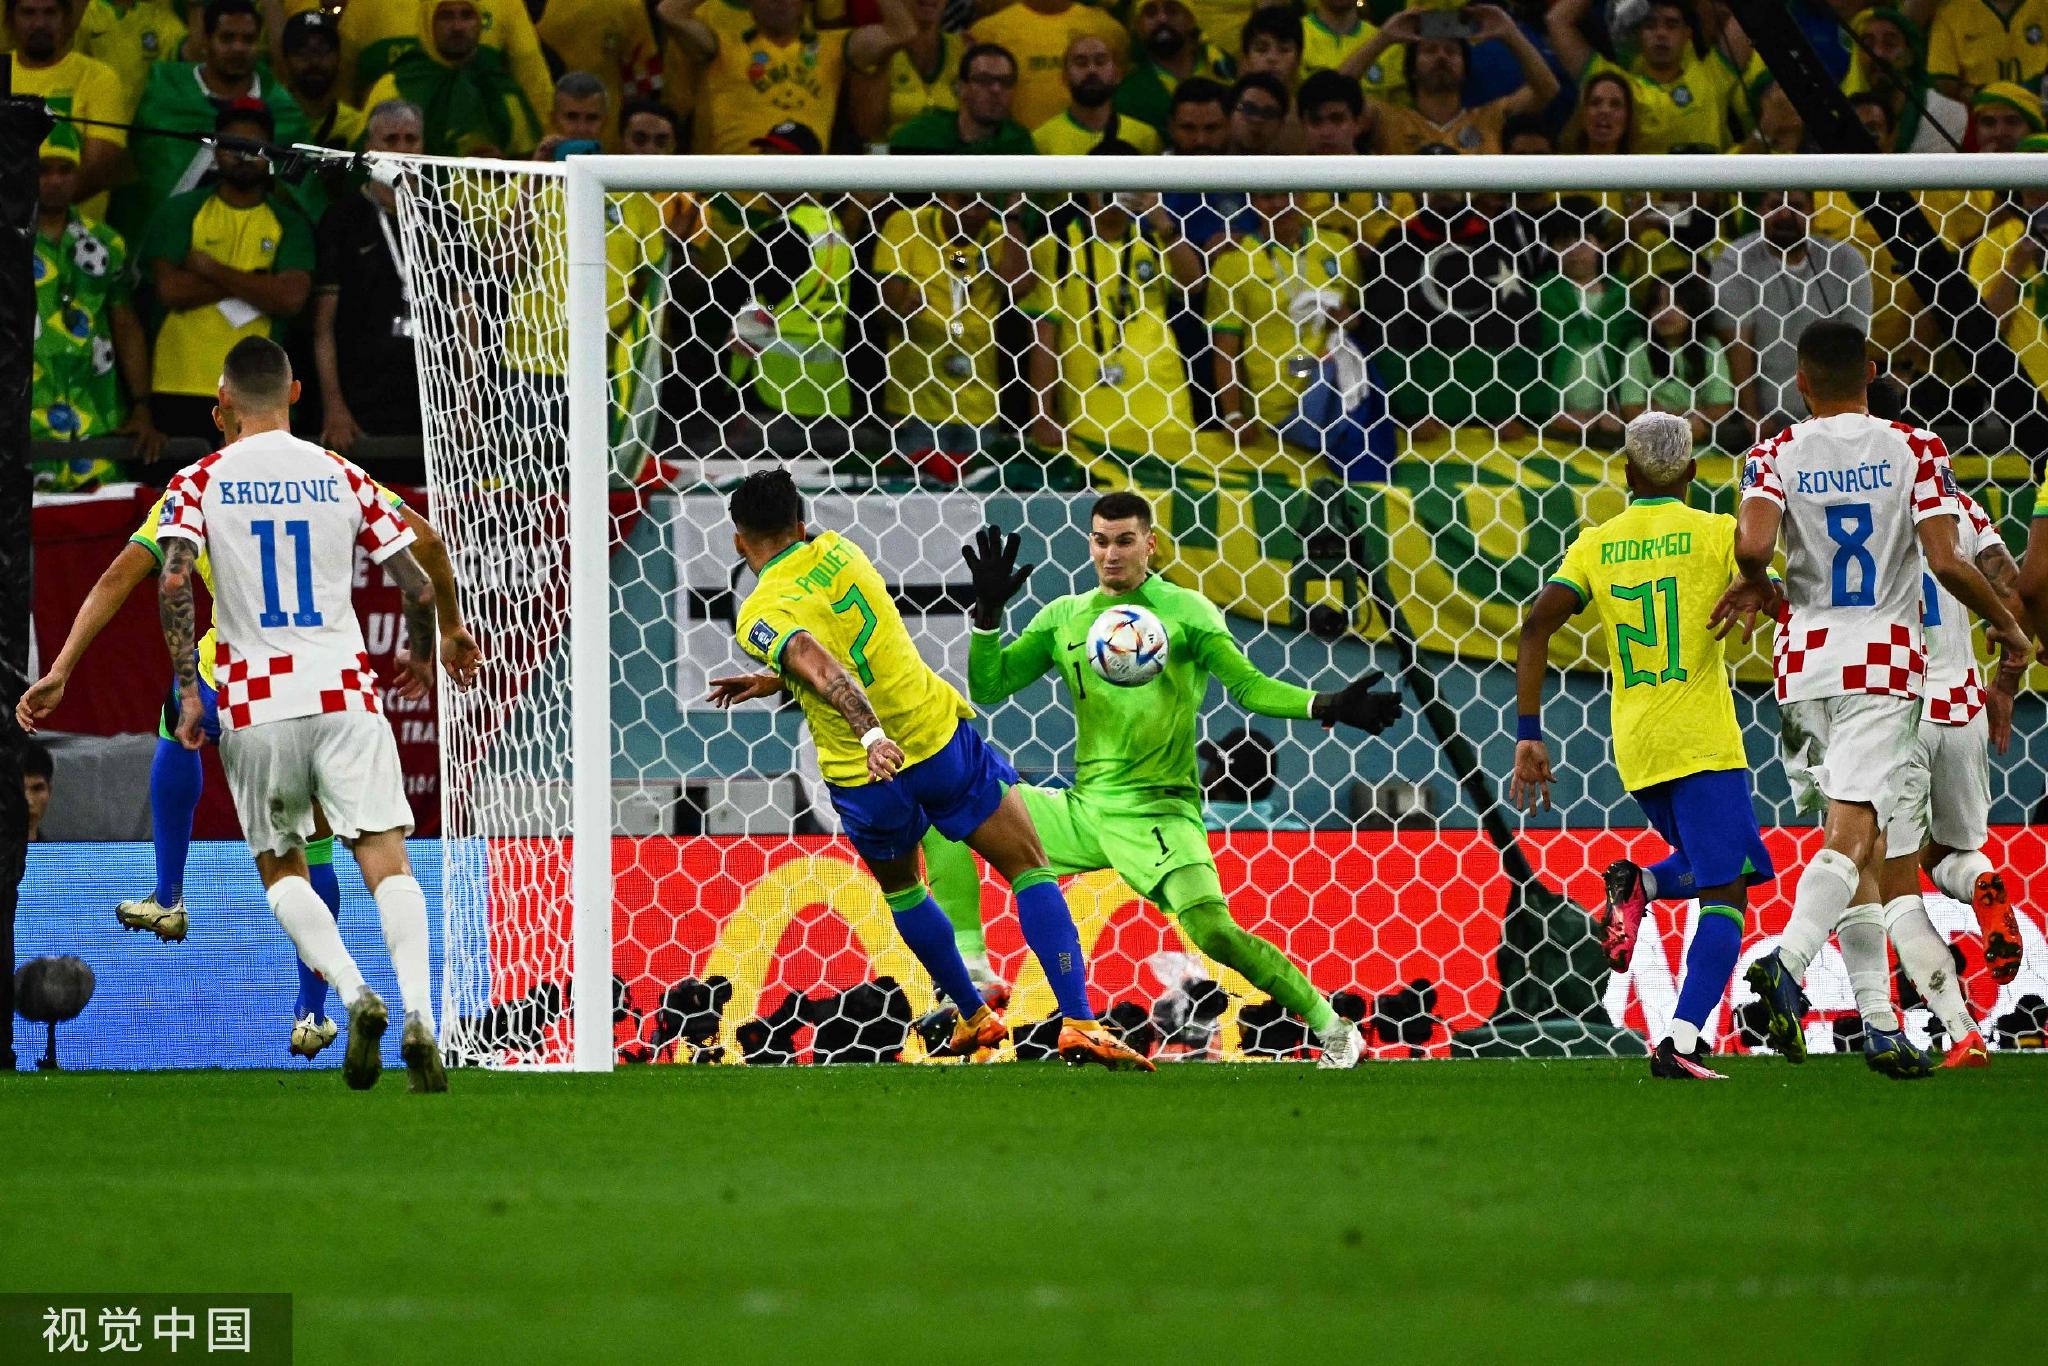 利瓦科维奇在下半场破坏了巴西队多次射门良机。